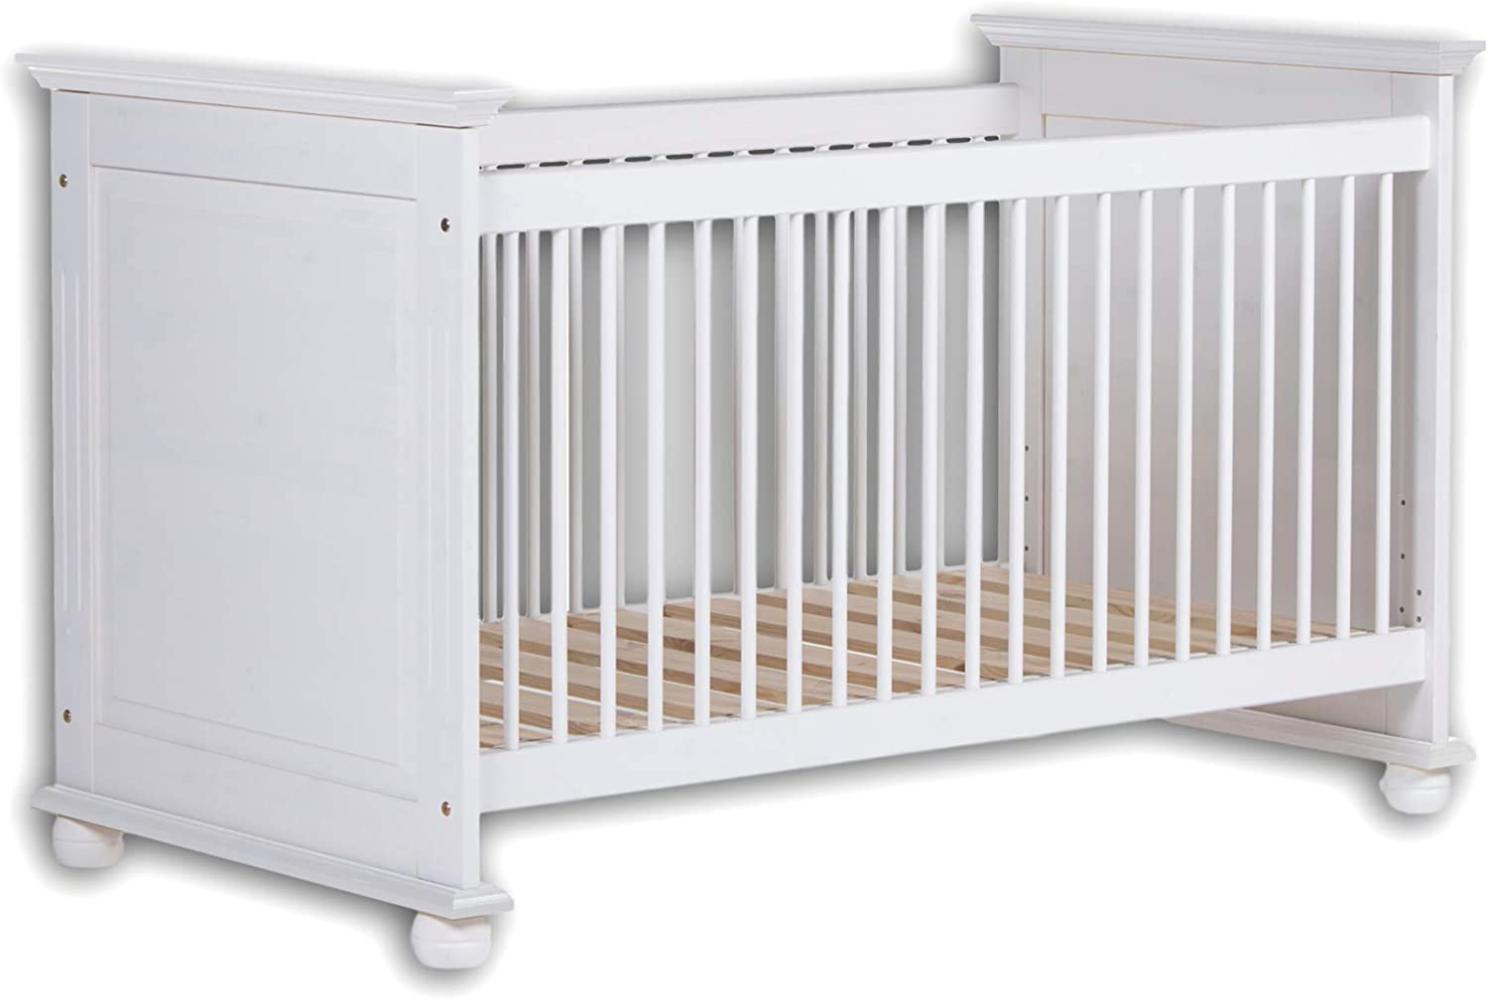 Stella Trading LAURA Sicheres Babybett mit 70 x 140 cm Liegefläche - Schönes Baby Gitterbett für einen geborgenen Schlaf in Kiefer massiv, weiß - 85 x 93 x 154 cm (B/H/T) Bild 1